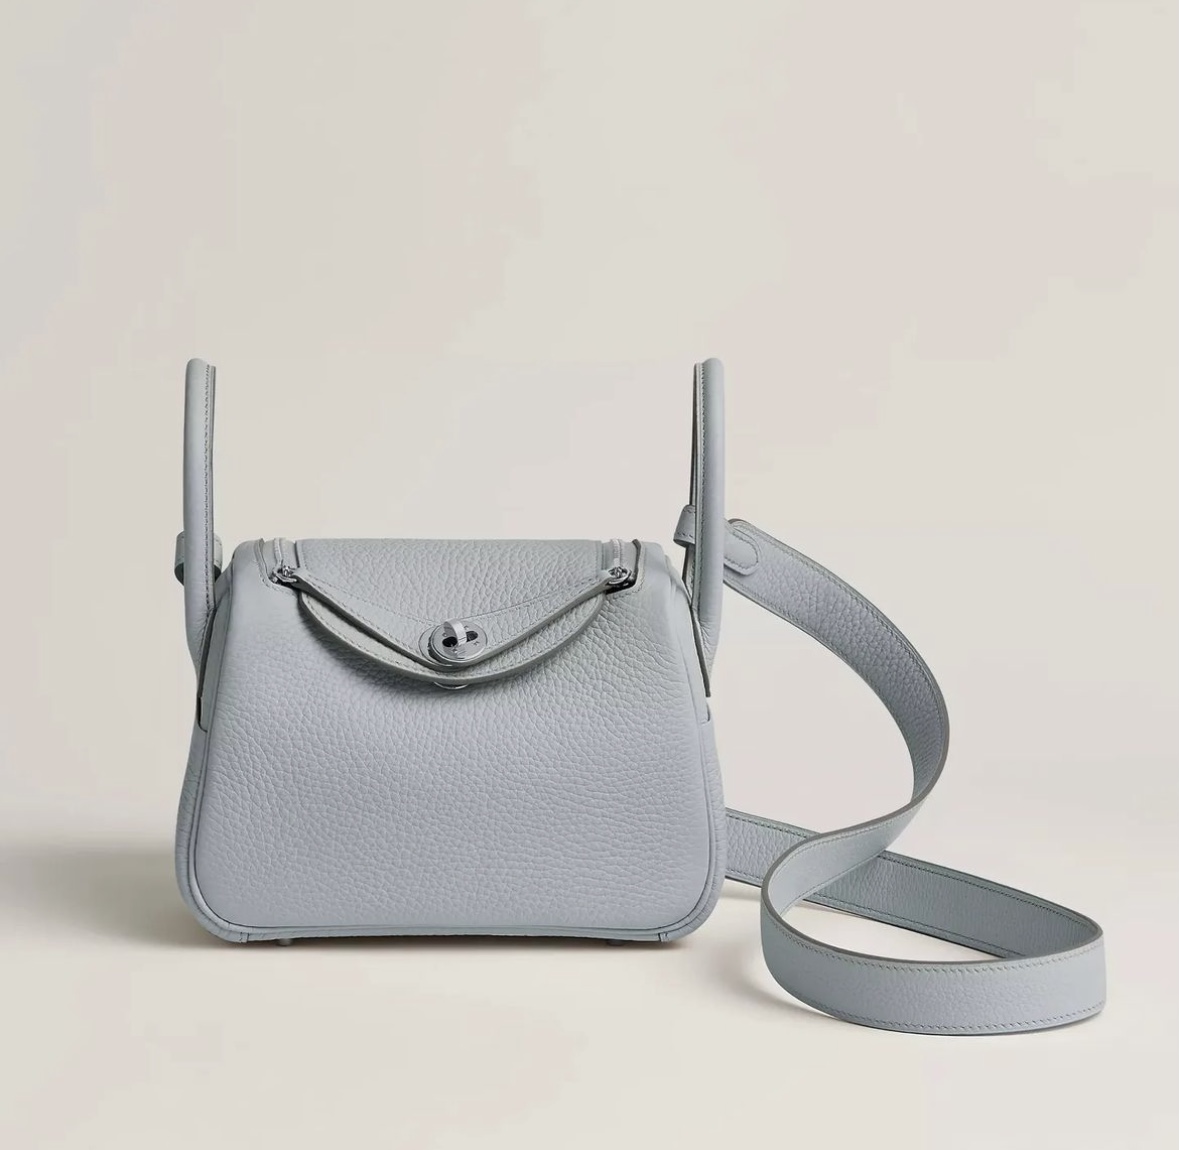 愛馬仕琳迪包最新款 女包價格與圖片 Hermès Lindy mini Bleu Pâle Clemence